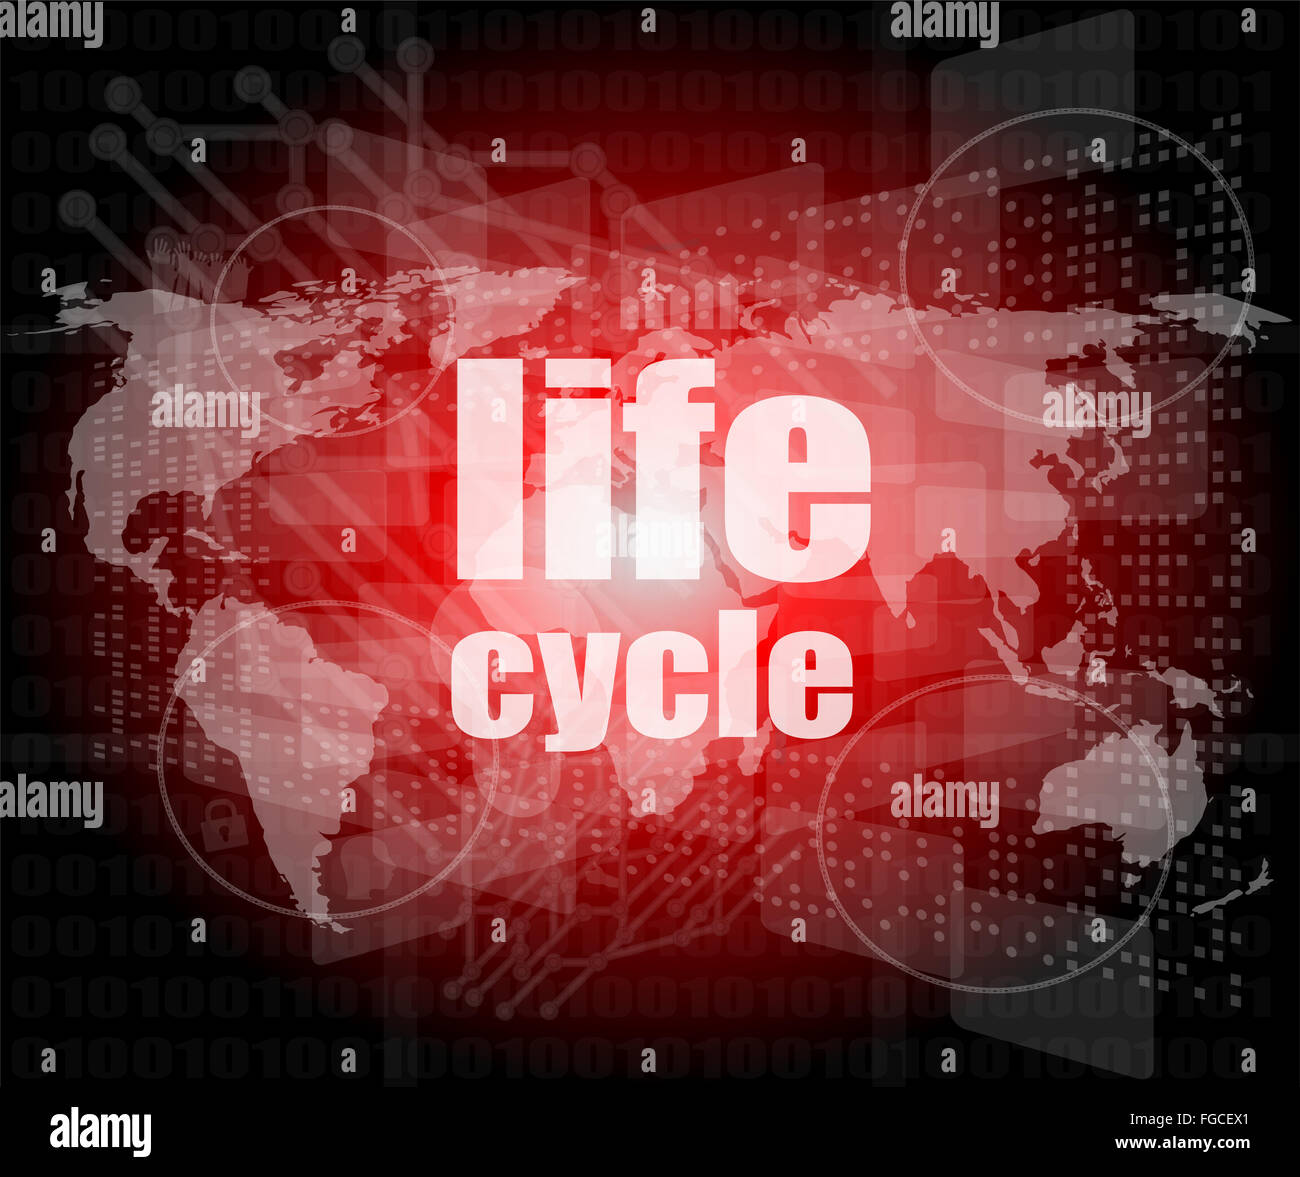 Mots clés du cycle de vie sur l'écran tactile numérique Banque D'Images